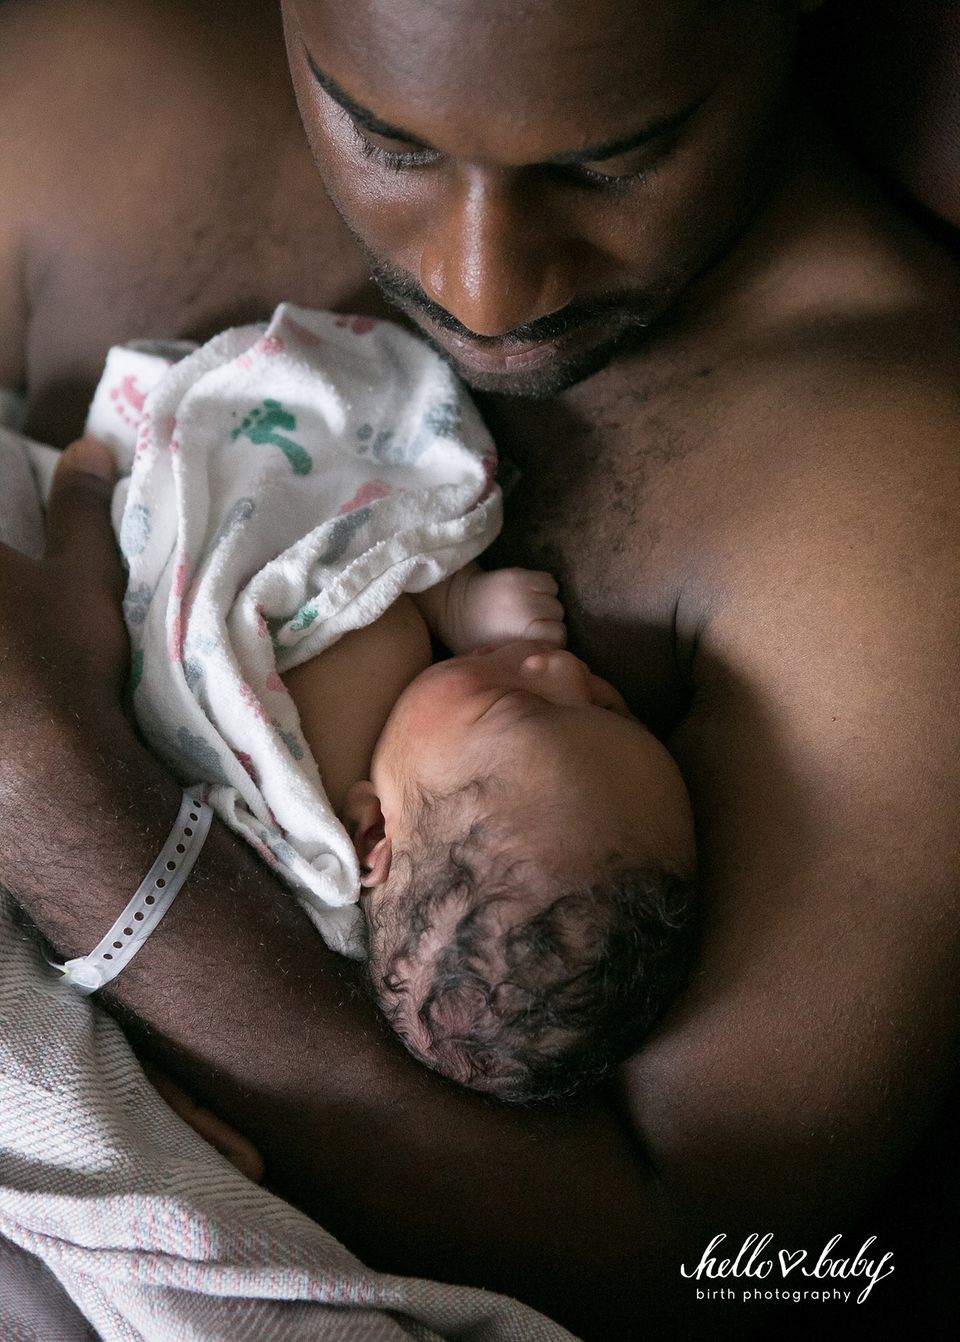 Emotionen pur!: "Ein Papa, der den ersten Hautkontakt mit seinem Baby genießt. Bei diesem Anblick verliebt man sich noch mal aufs Neue in seinen Partner!"